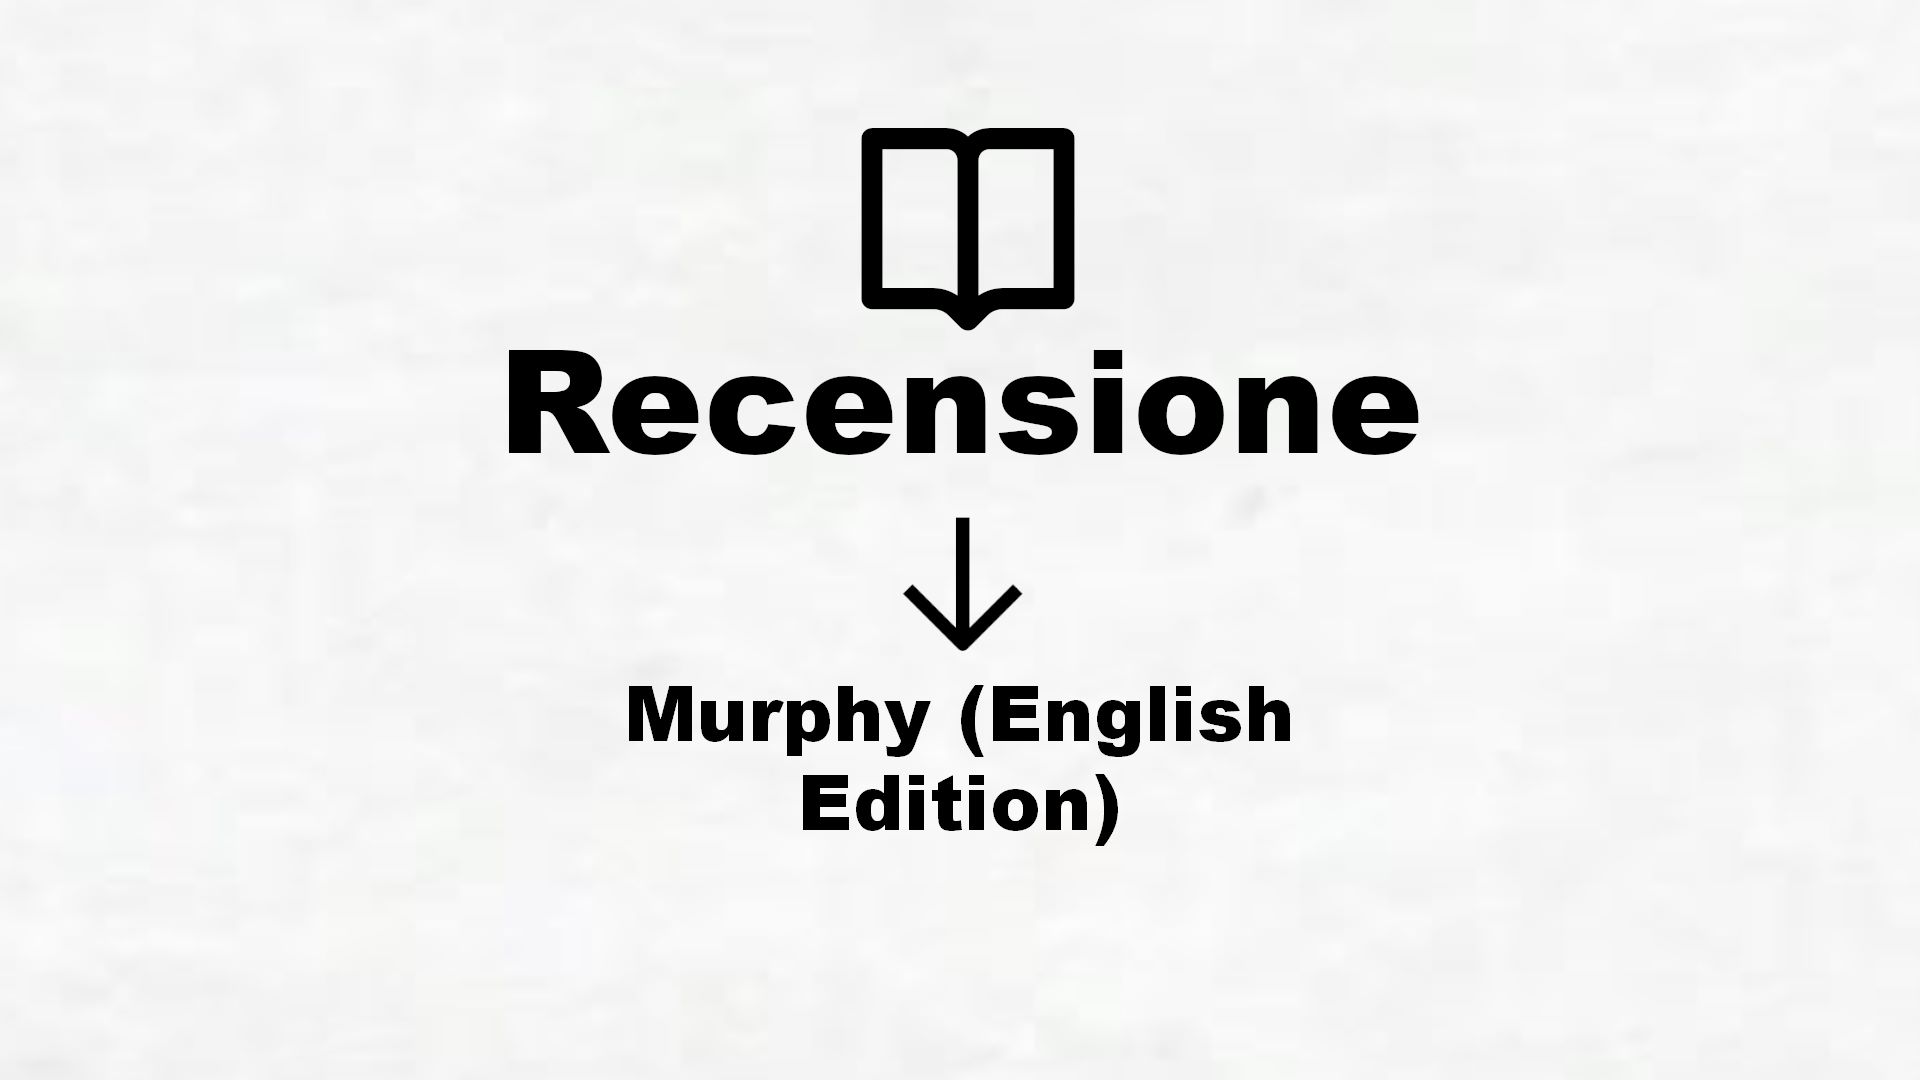 Murphy (English Edition) – Recensione Libro